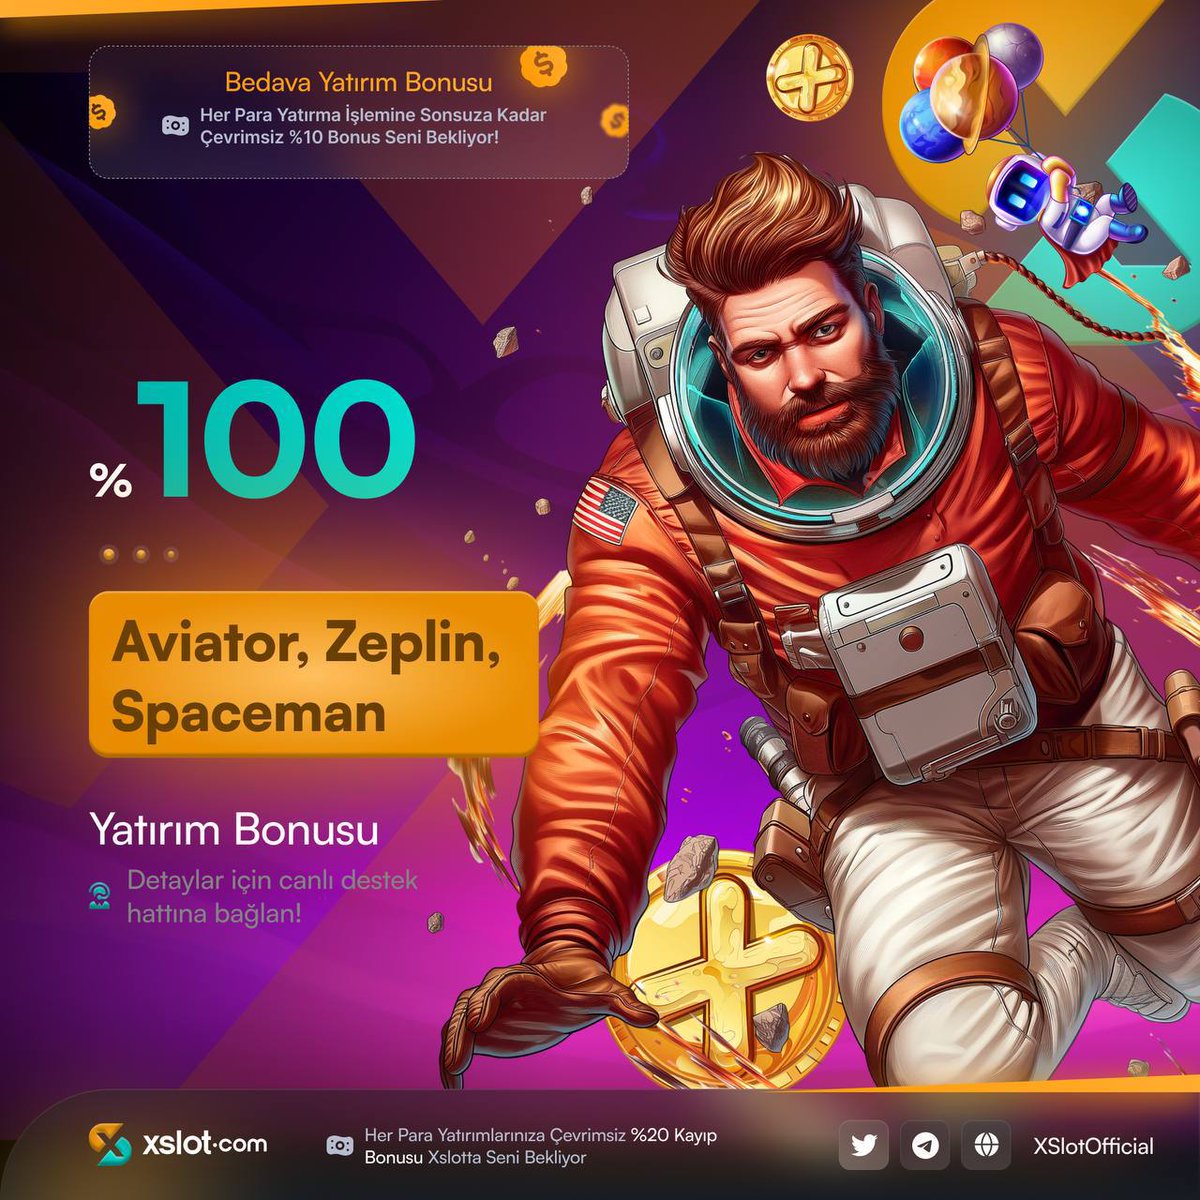 🔥 %100 NAKİT BONUS! AKTİF

✈️ Aviator-Zeplin-Spaceman Oyunlarında Geçerli %100 Yatırım Bonusu şimdi Xslot.com'da

⚡️Giriş ➡️ cutt.ly/xslotcom

#xslot #xslotgiriş #denemebonusuverensiteler